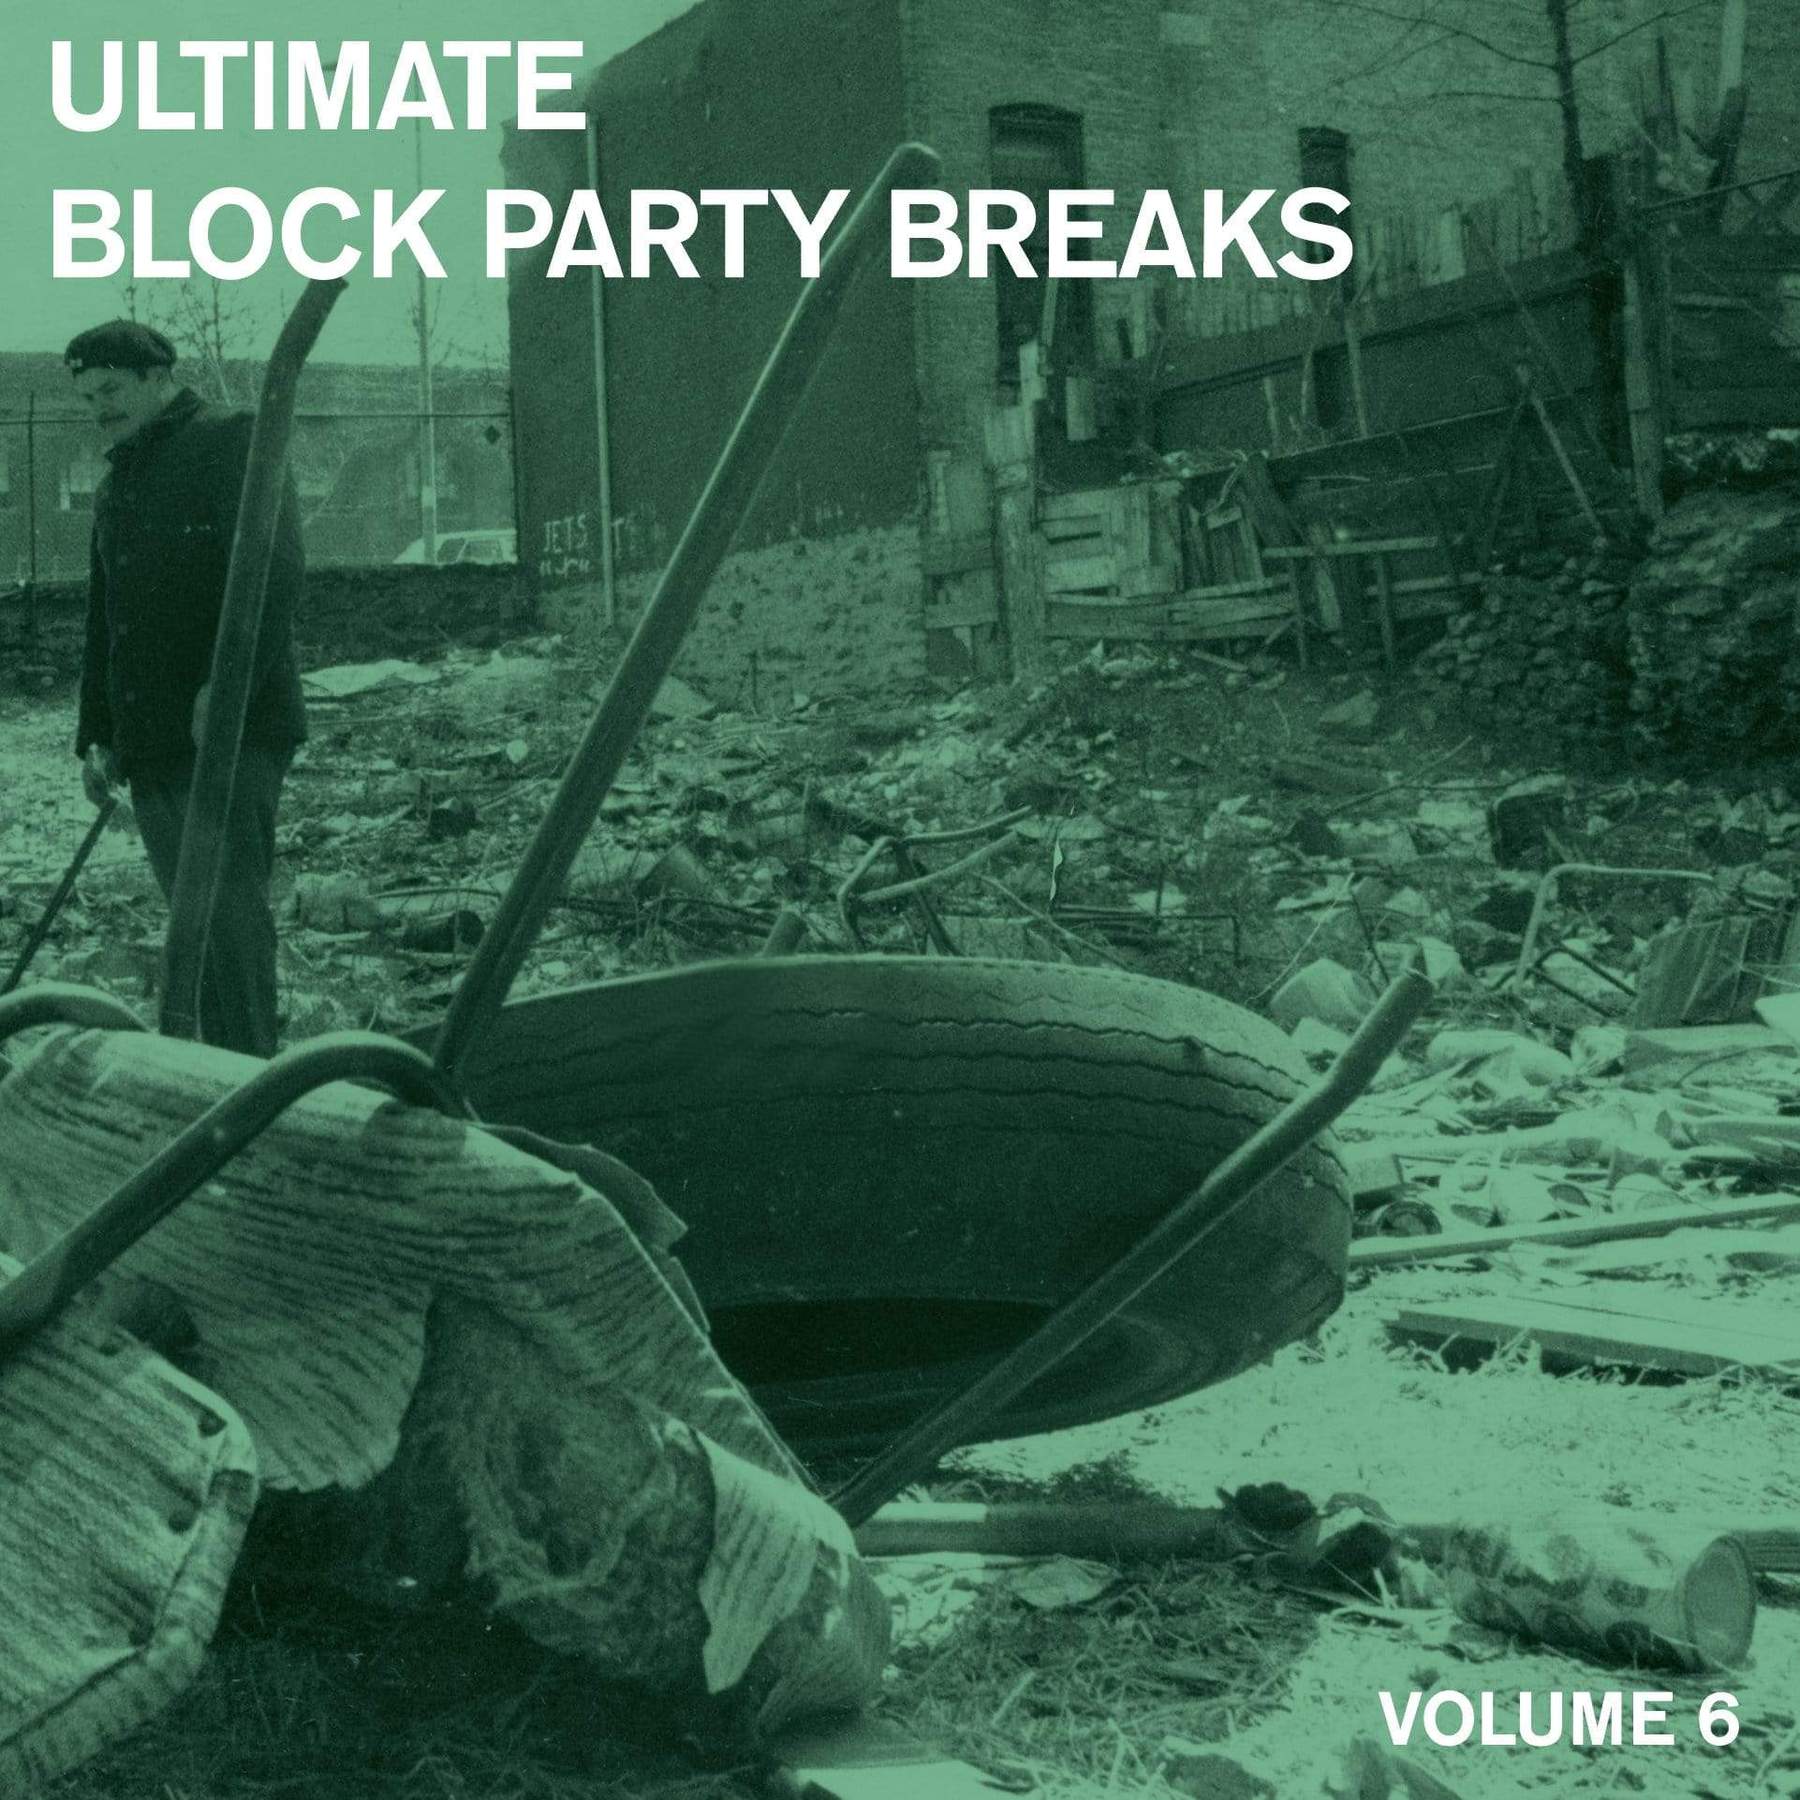 V/A - ULTIMATE BLOCK PARTY BREAKS VOL. 6 Vinyl LP